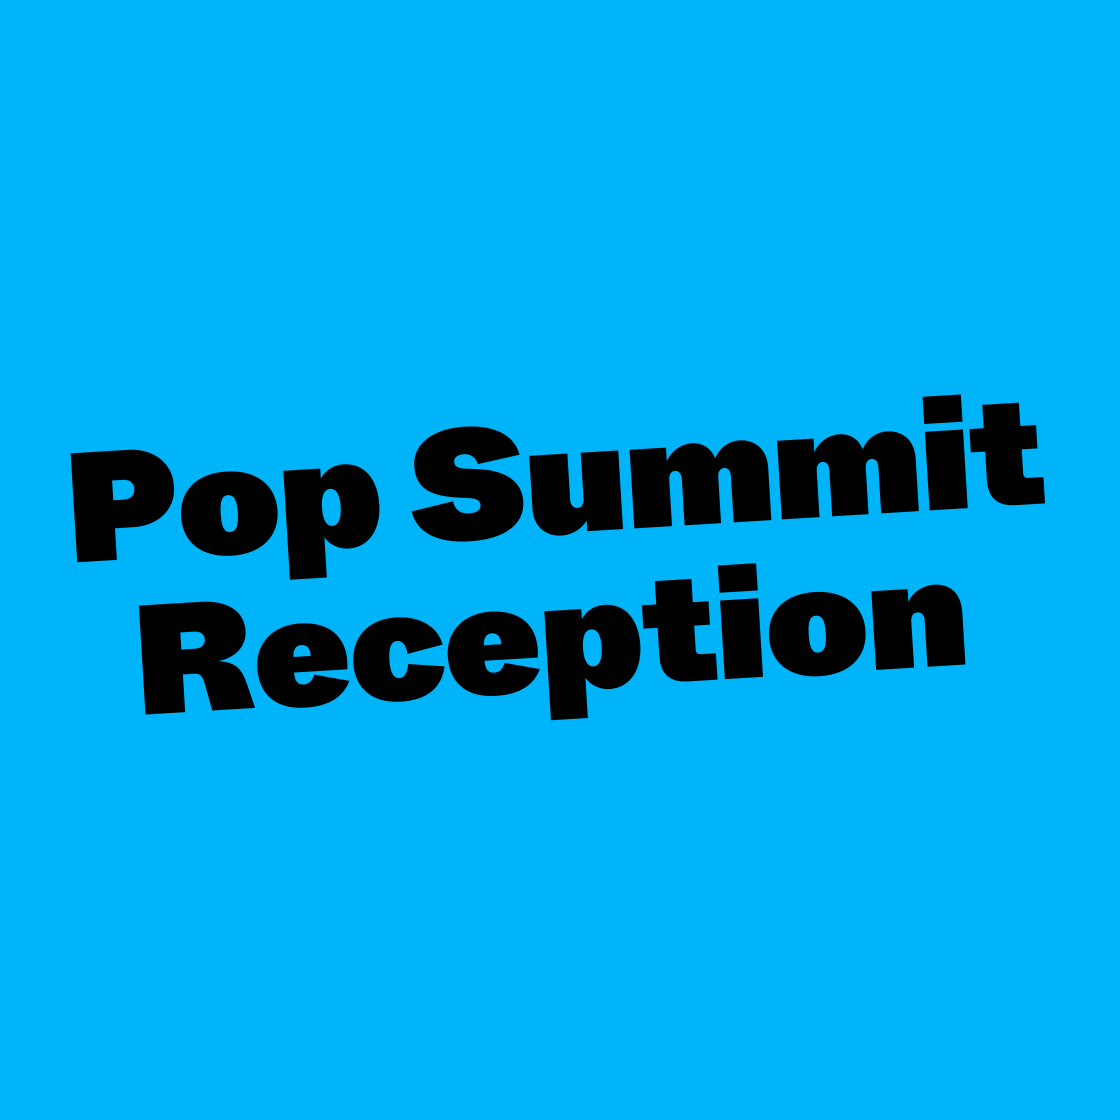 Pop Summit Reception